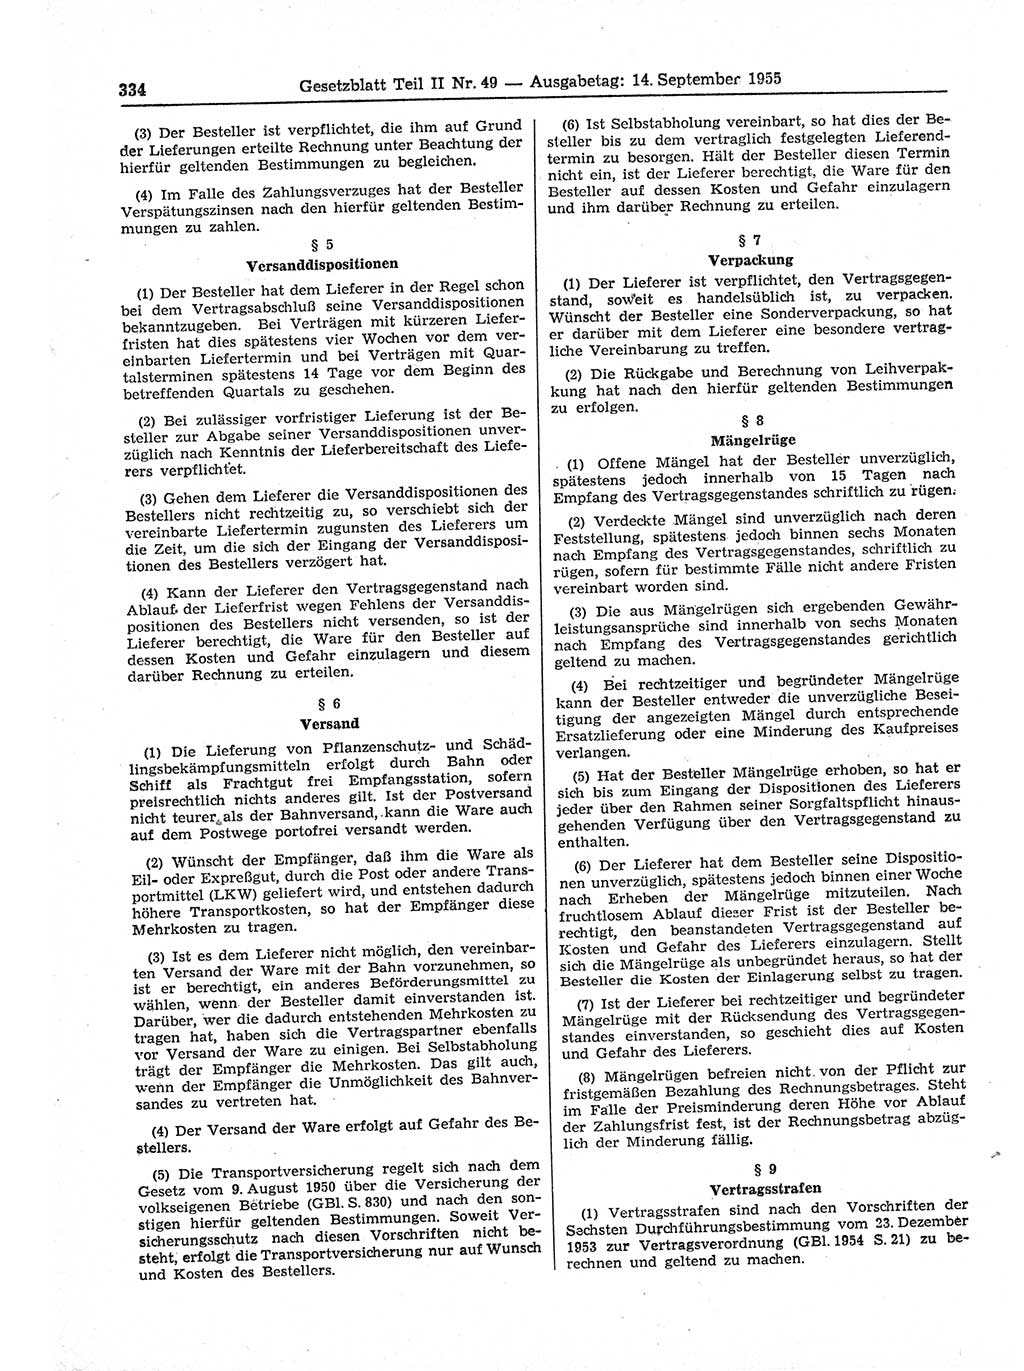 Gesetzblatt (GBl.) der Deutschen Demokratischen Republik (DDR) Teil ⅠⅠ 1955, Seite 334 (GBl. DDR ⅠⅠ 1955, S. 334)